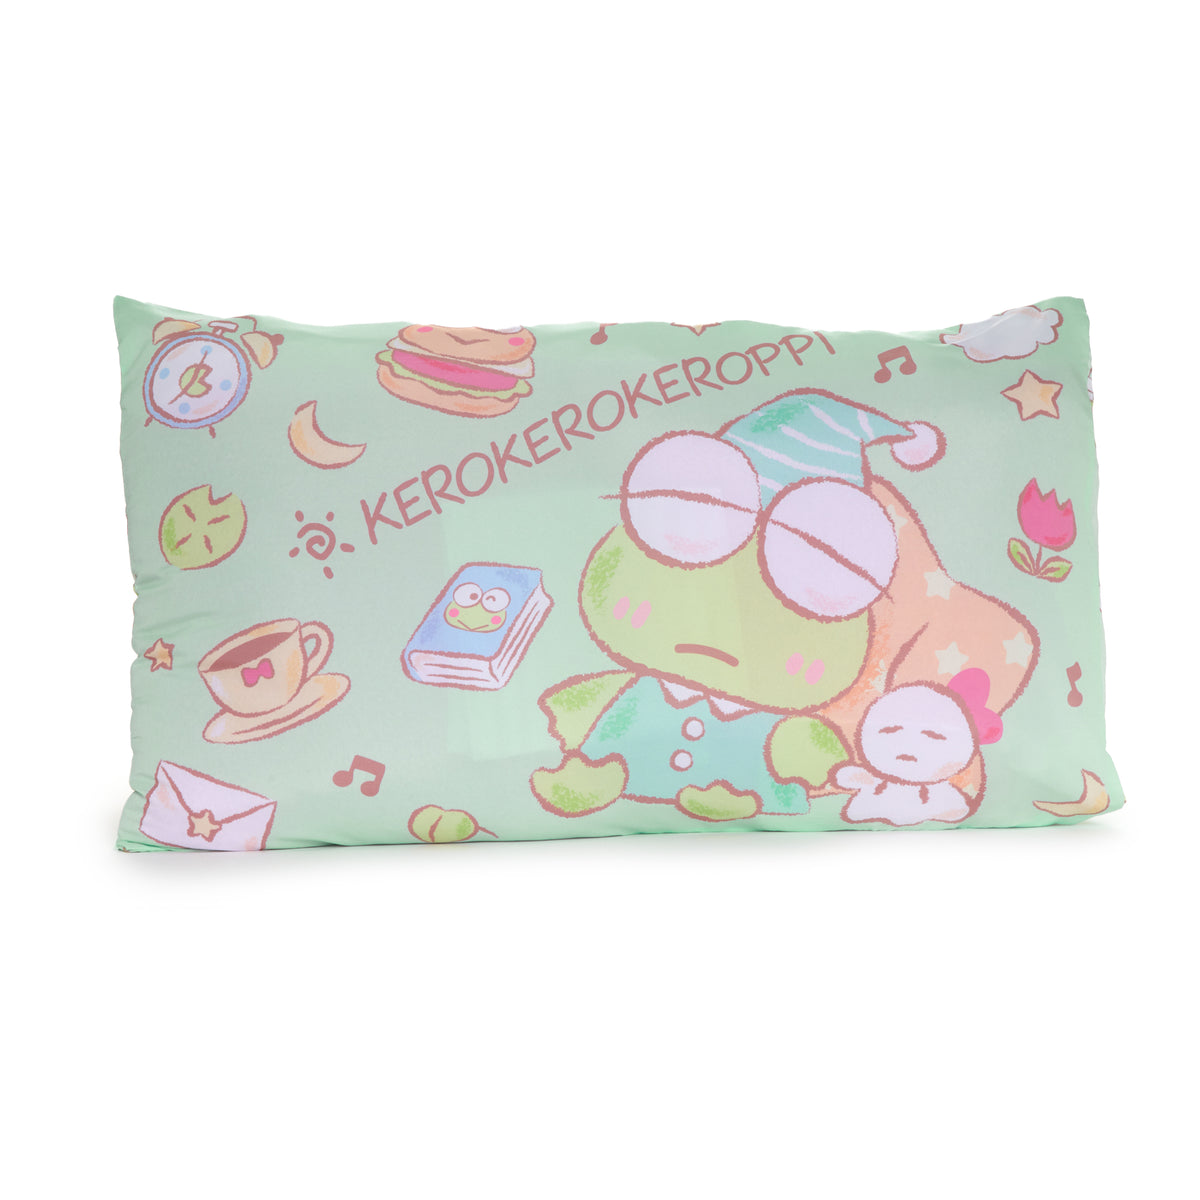 Keroppi Pillowcase (Sweet Dreams Series) Home Goods Japan Original   